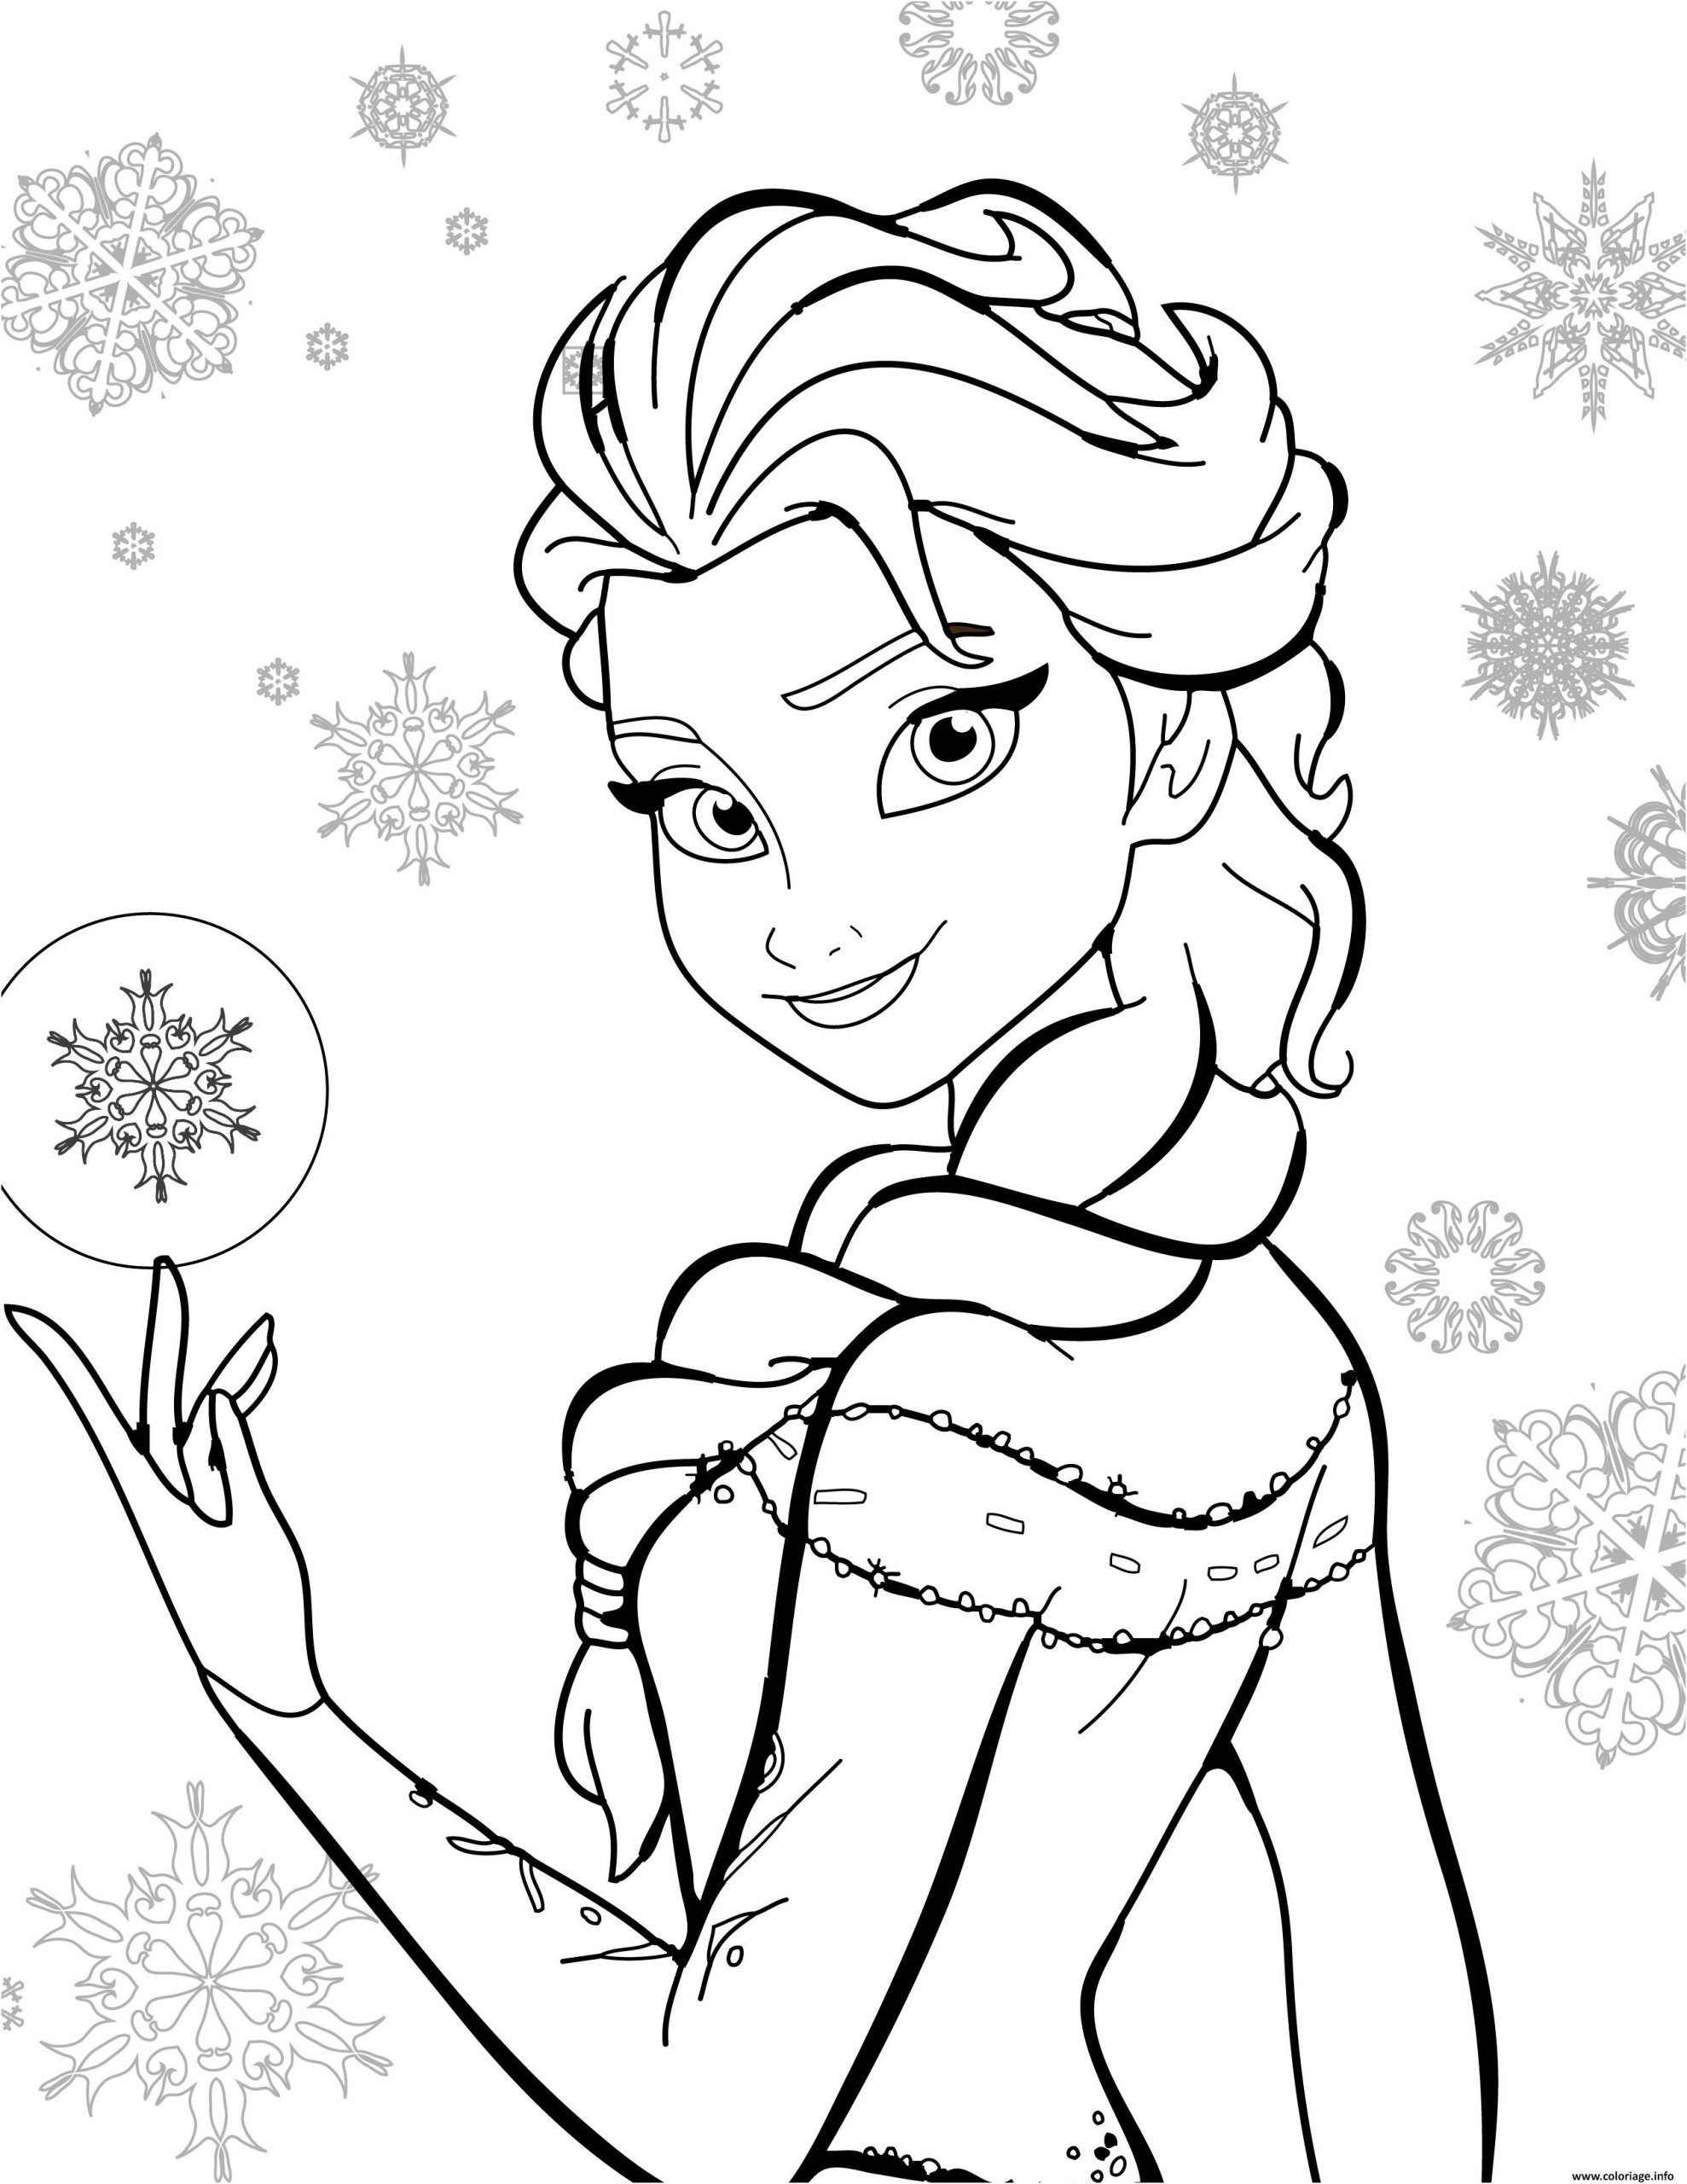 dessin de la reine des neiges unique photos coloriage disney la reine des neiges jecolorie